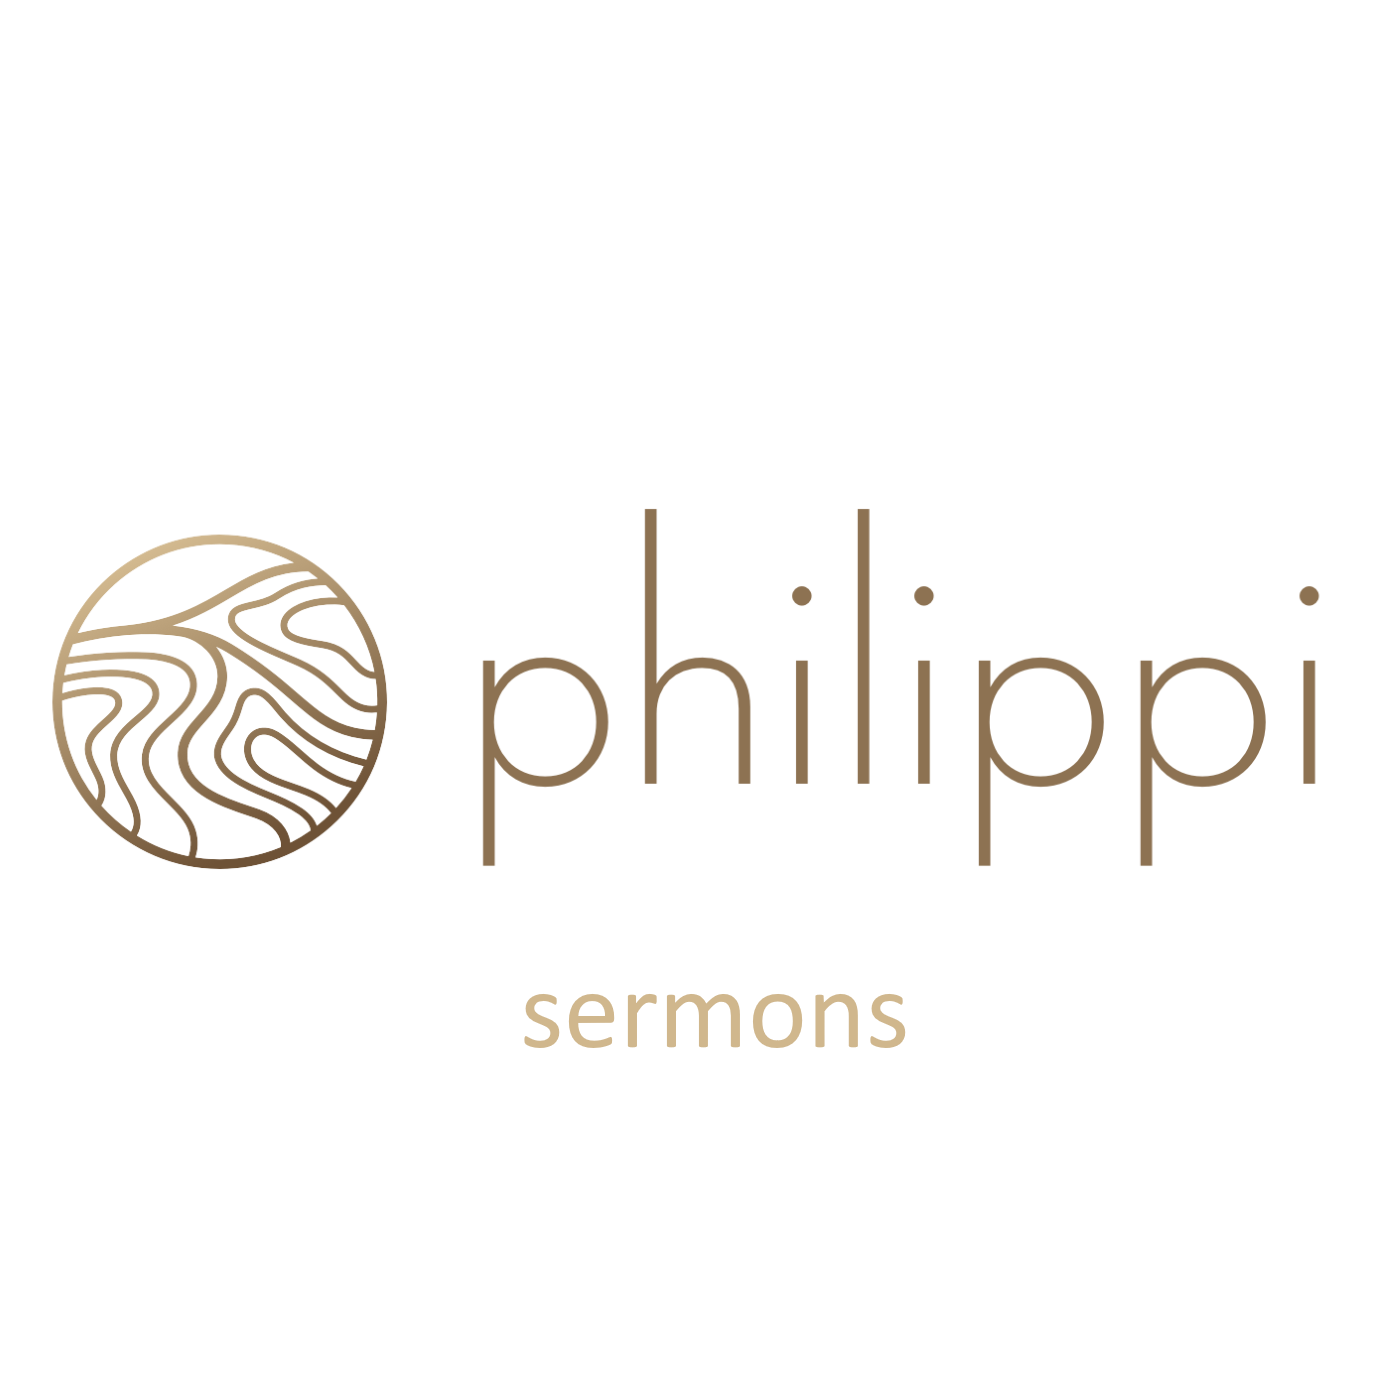 Philippi Church - Sermons Podcast